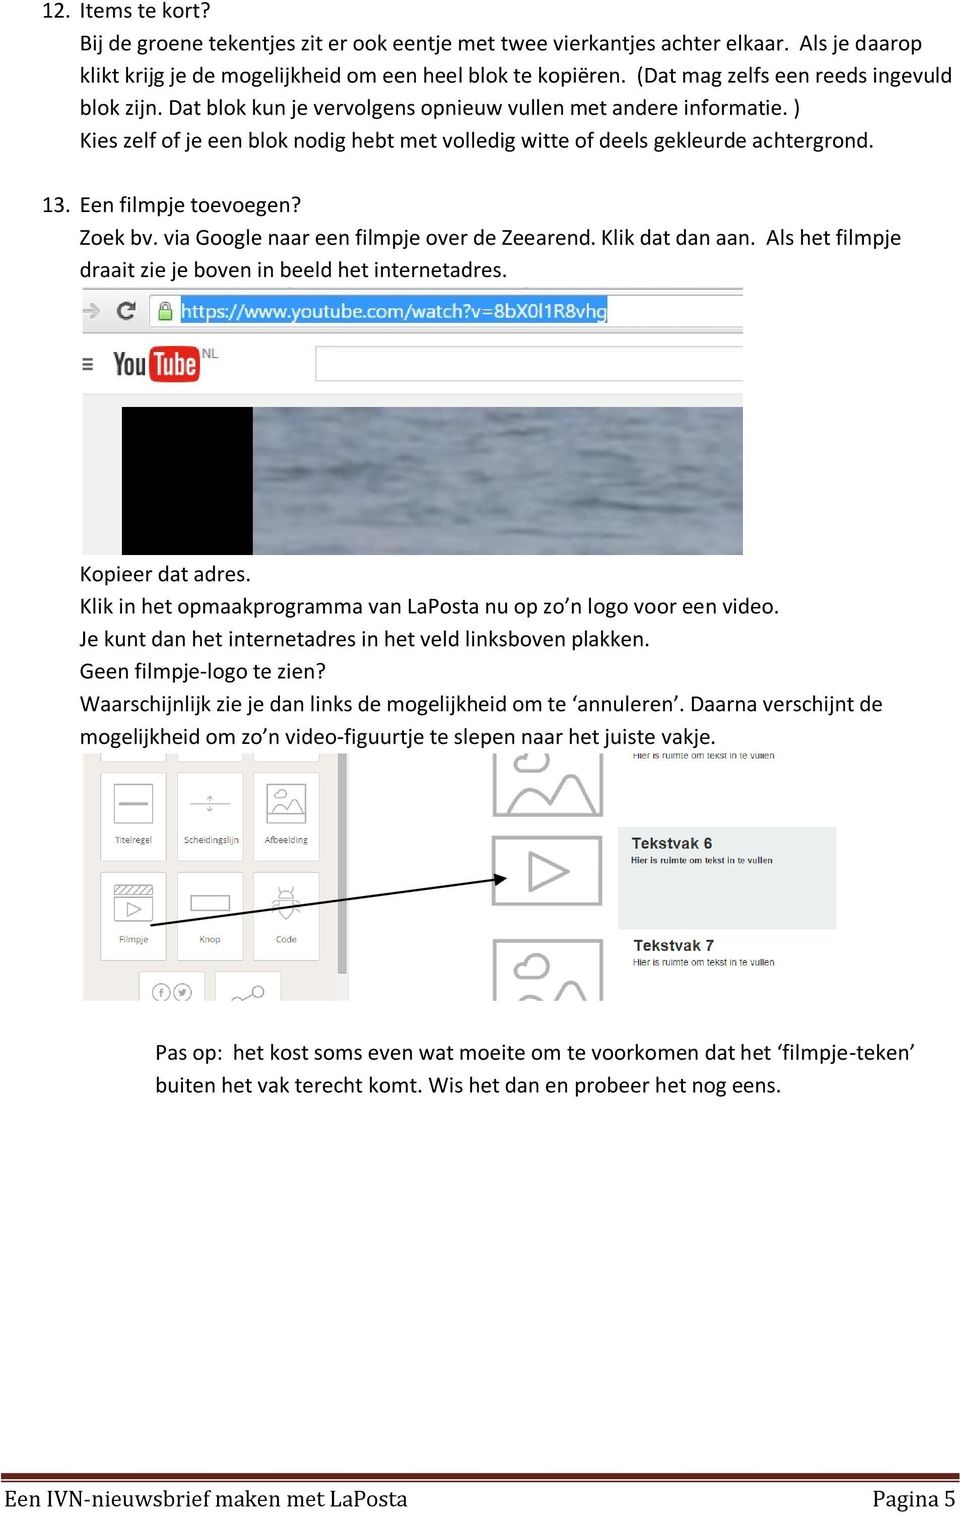 13. Een filmpje toevoegen? Zoek bv. via Google naar een filmpje over de Zeearend. Klik dat dan aan. Als het filmpje draait zie je boven in beeld het internetadres. Kopieer dat adres.